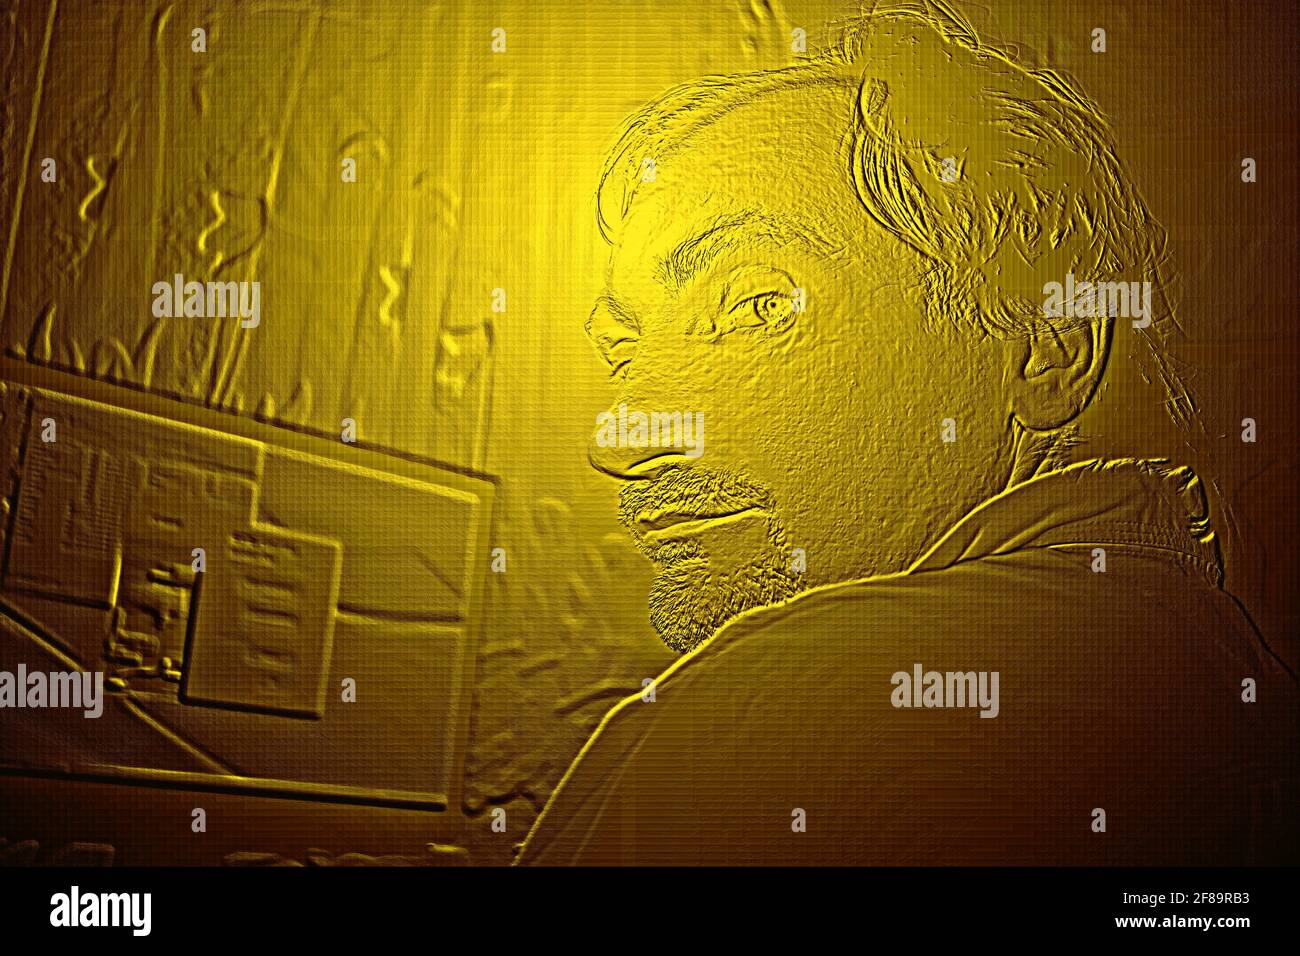 L'homme est assis à mi-tour sur un écran d'ordinateur, un motif artistique, des illustrations d'art dans des teintes dorées Banque D'Images